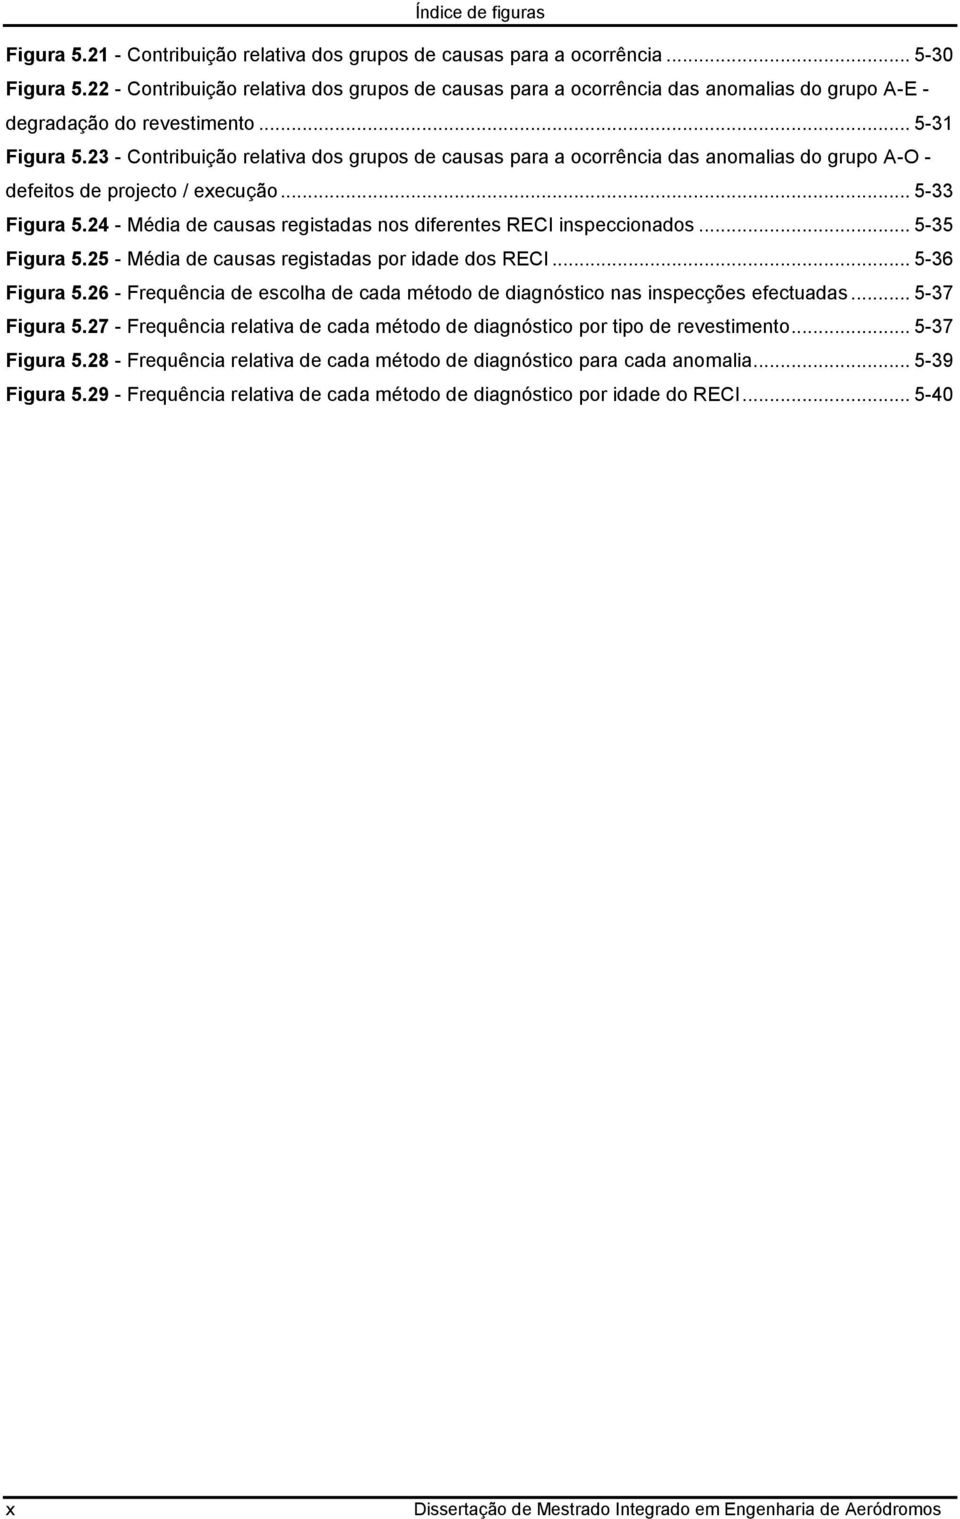 23 - Contribuição relativa dos grupos de causas para a ocorrência das anomalias do grupo A-O - defeitos de projecto / execução... 5-33 Figura 5.